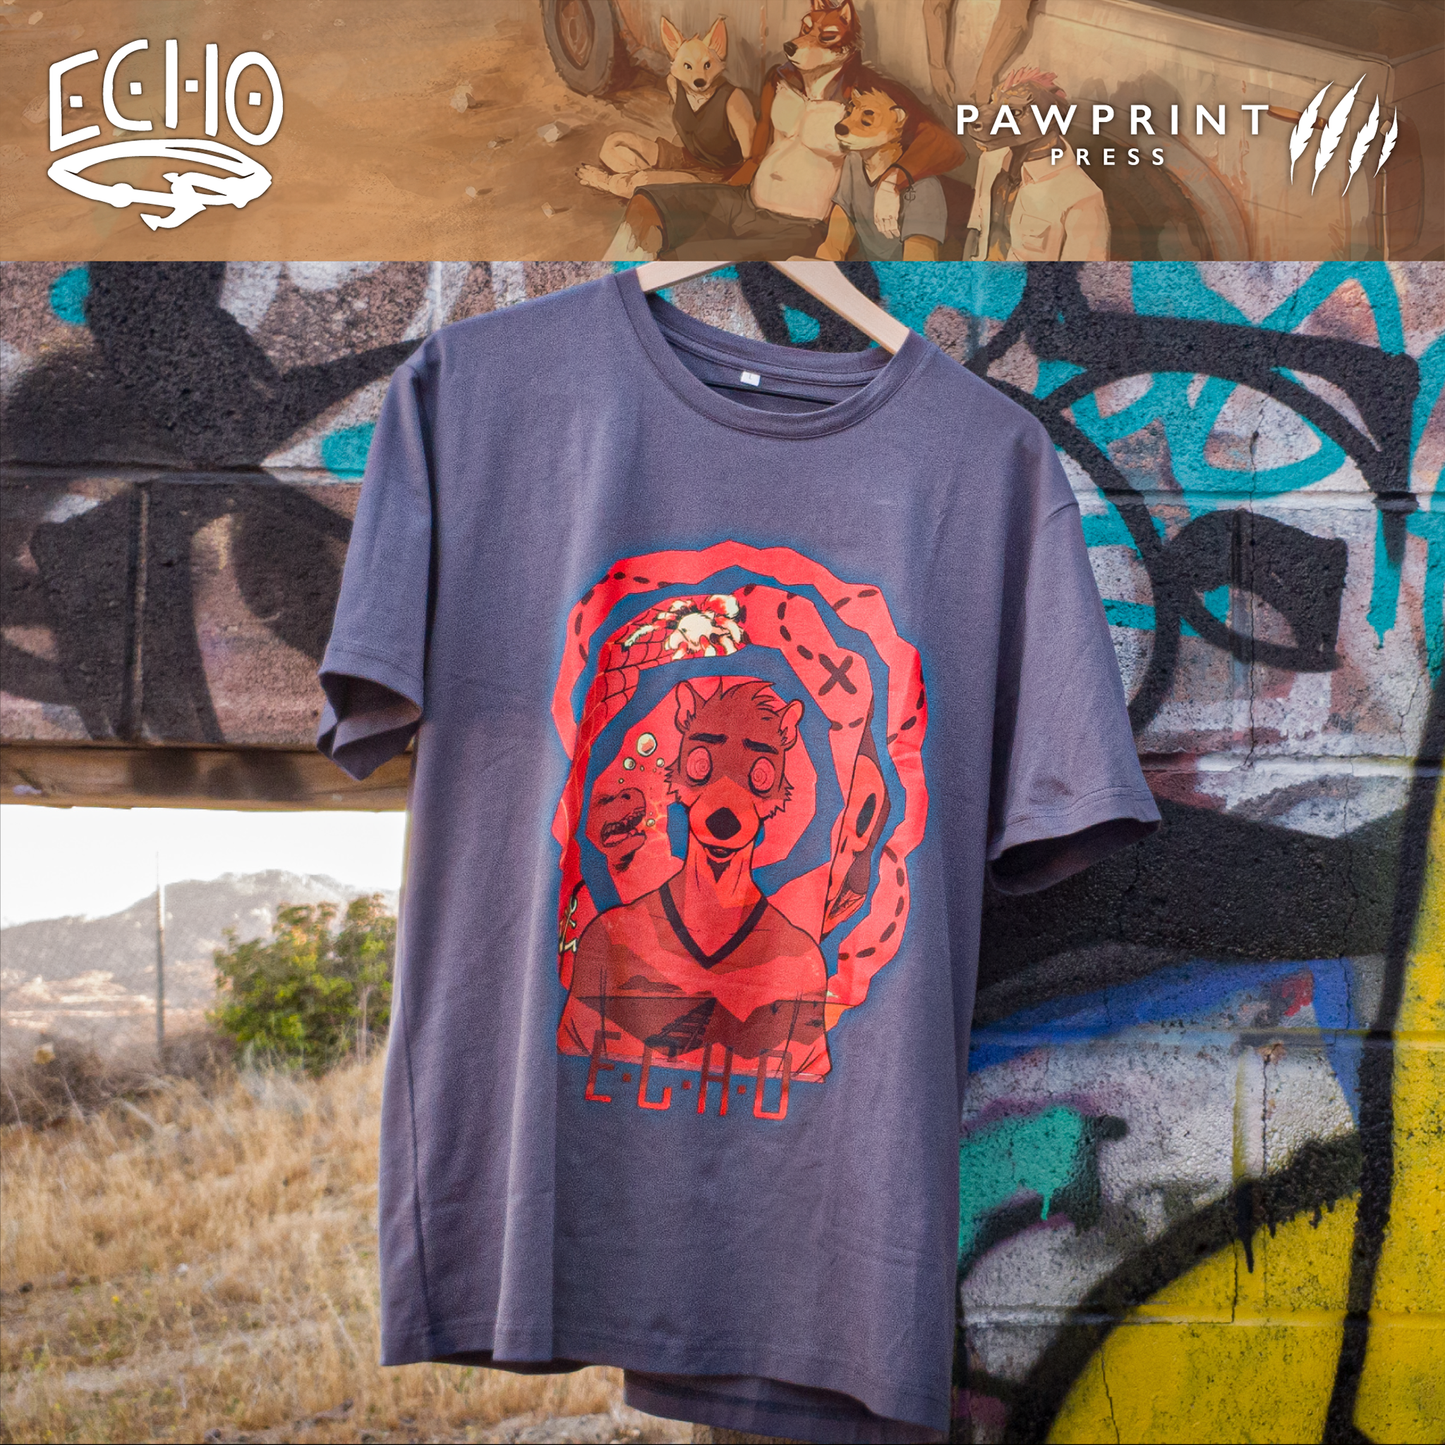 Echo: Circles T-Shirt